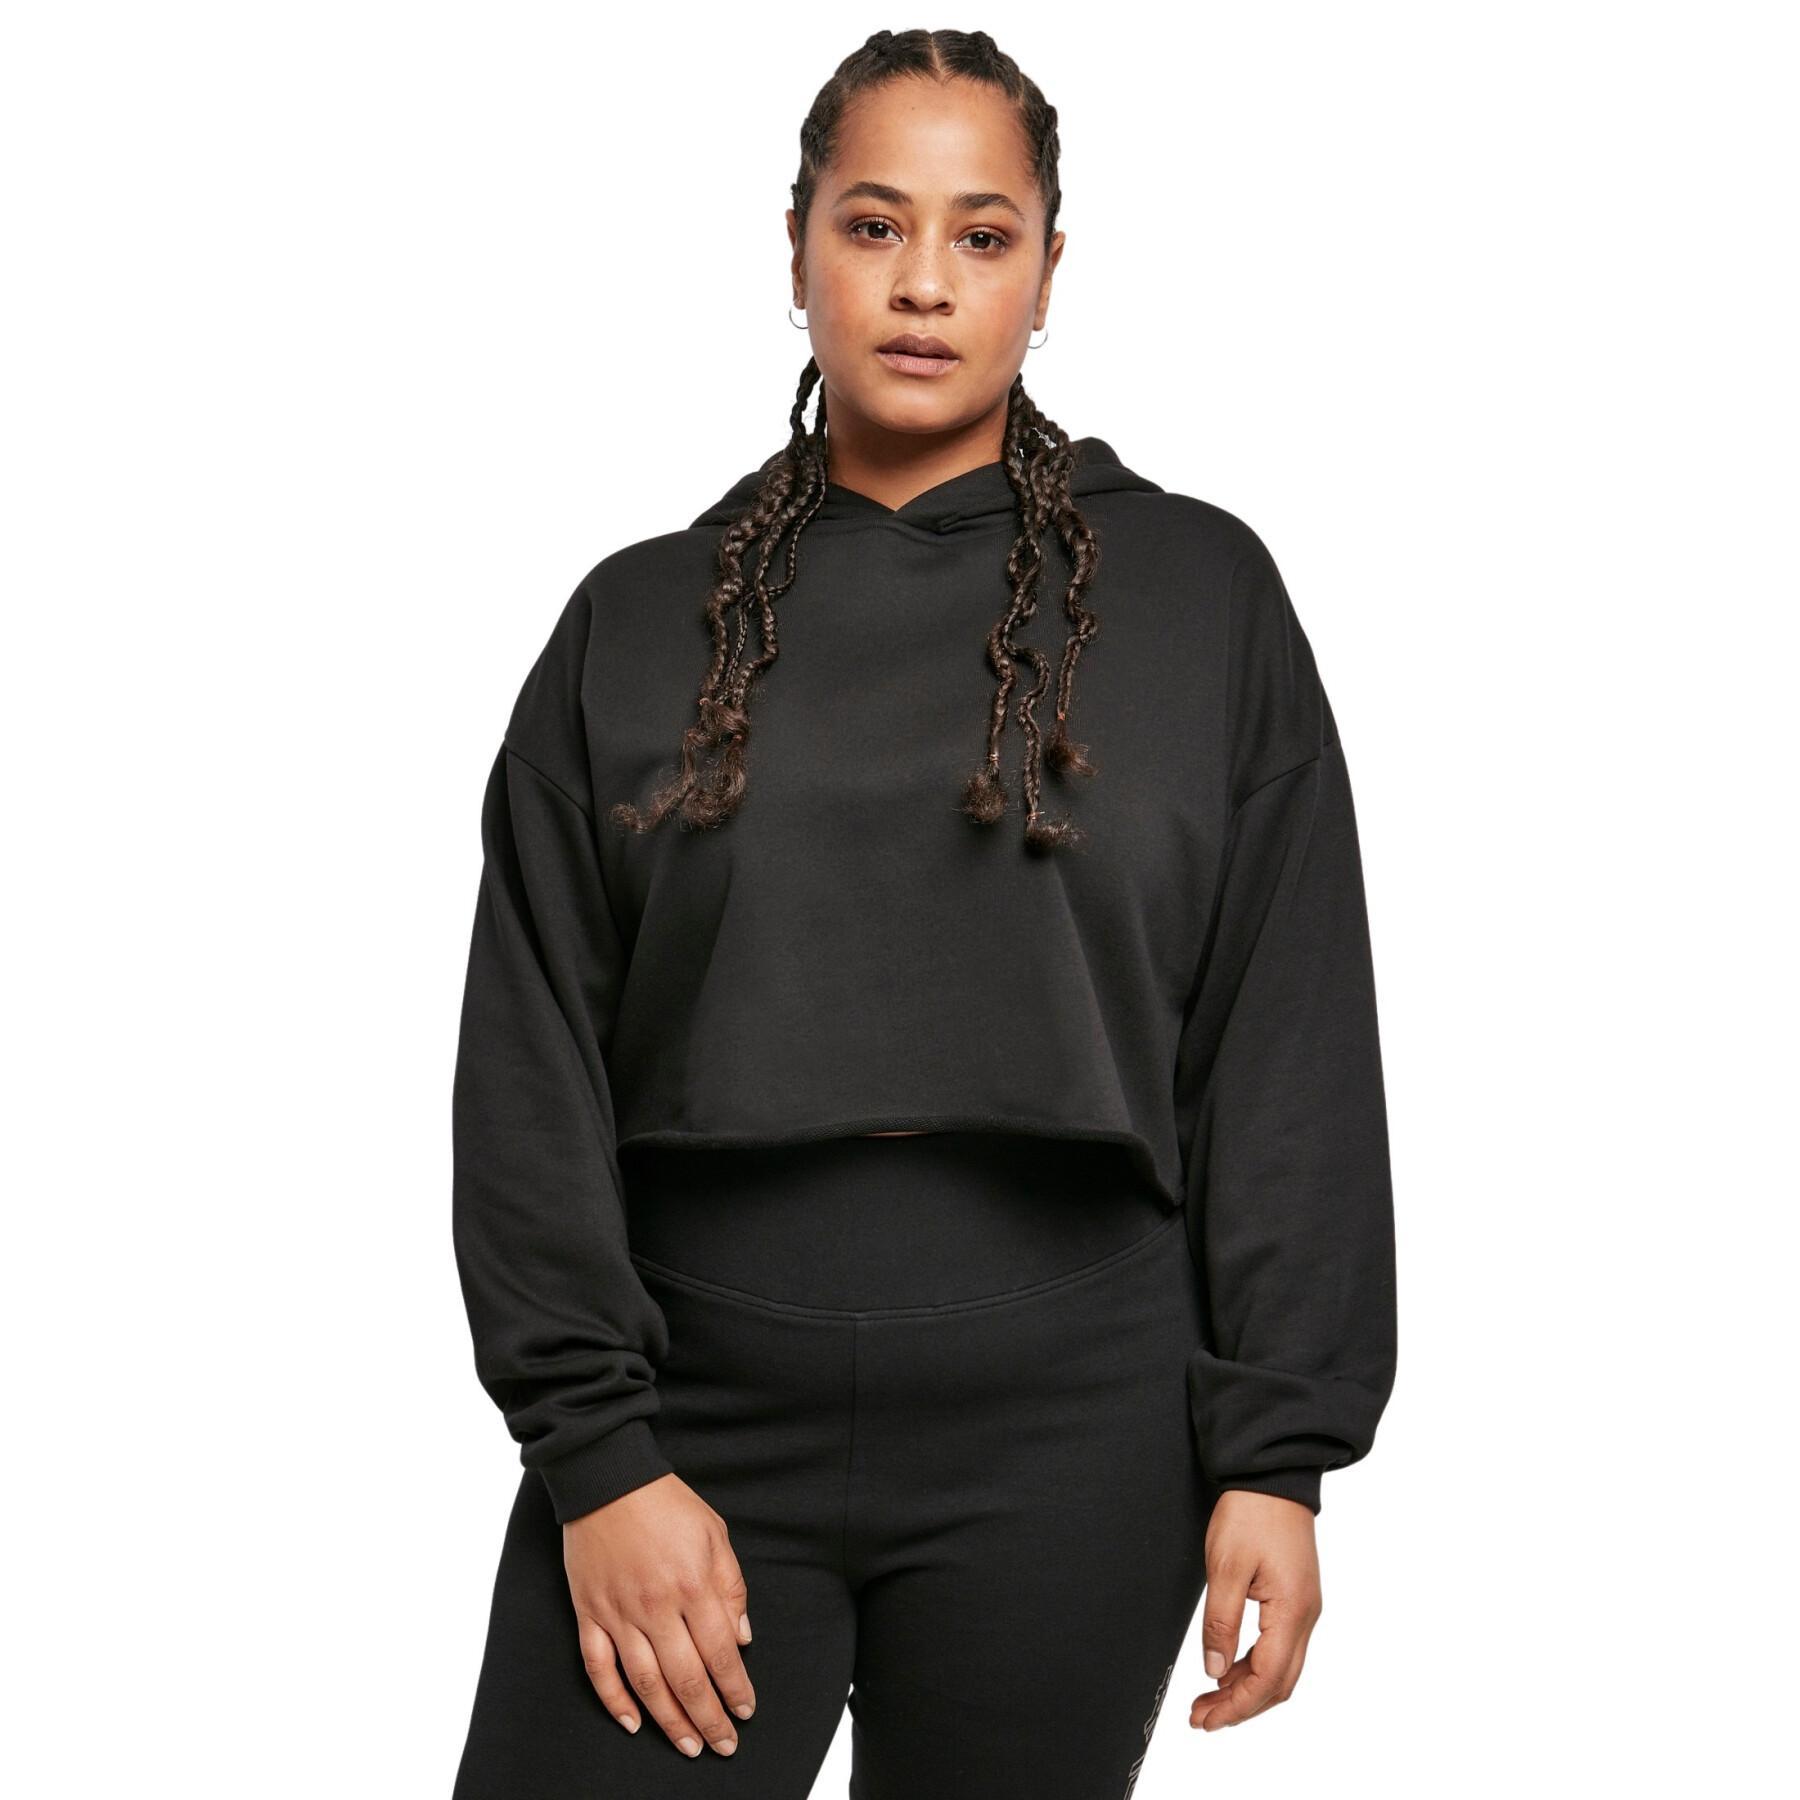 Sweatshirt oversized hoodie voor dames Urban Classics